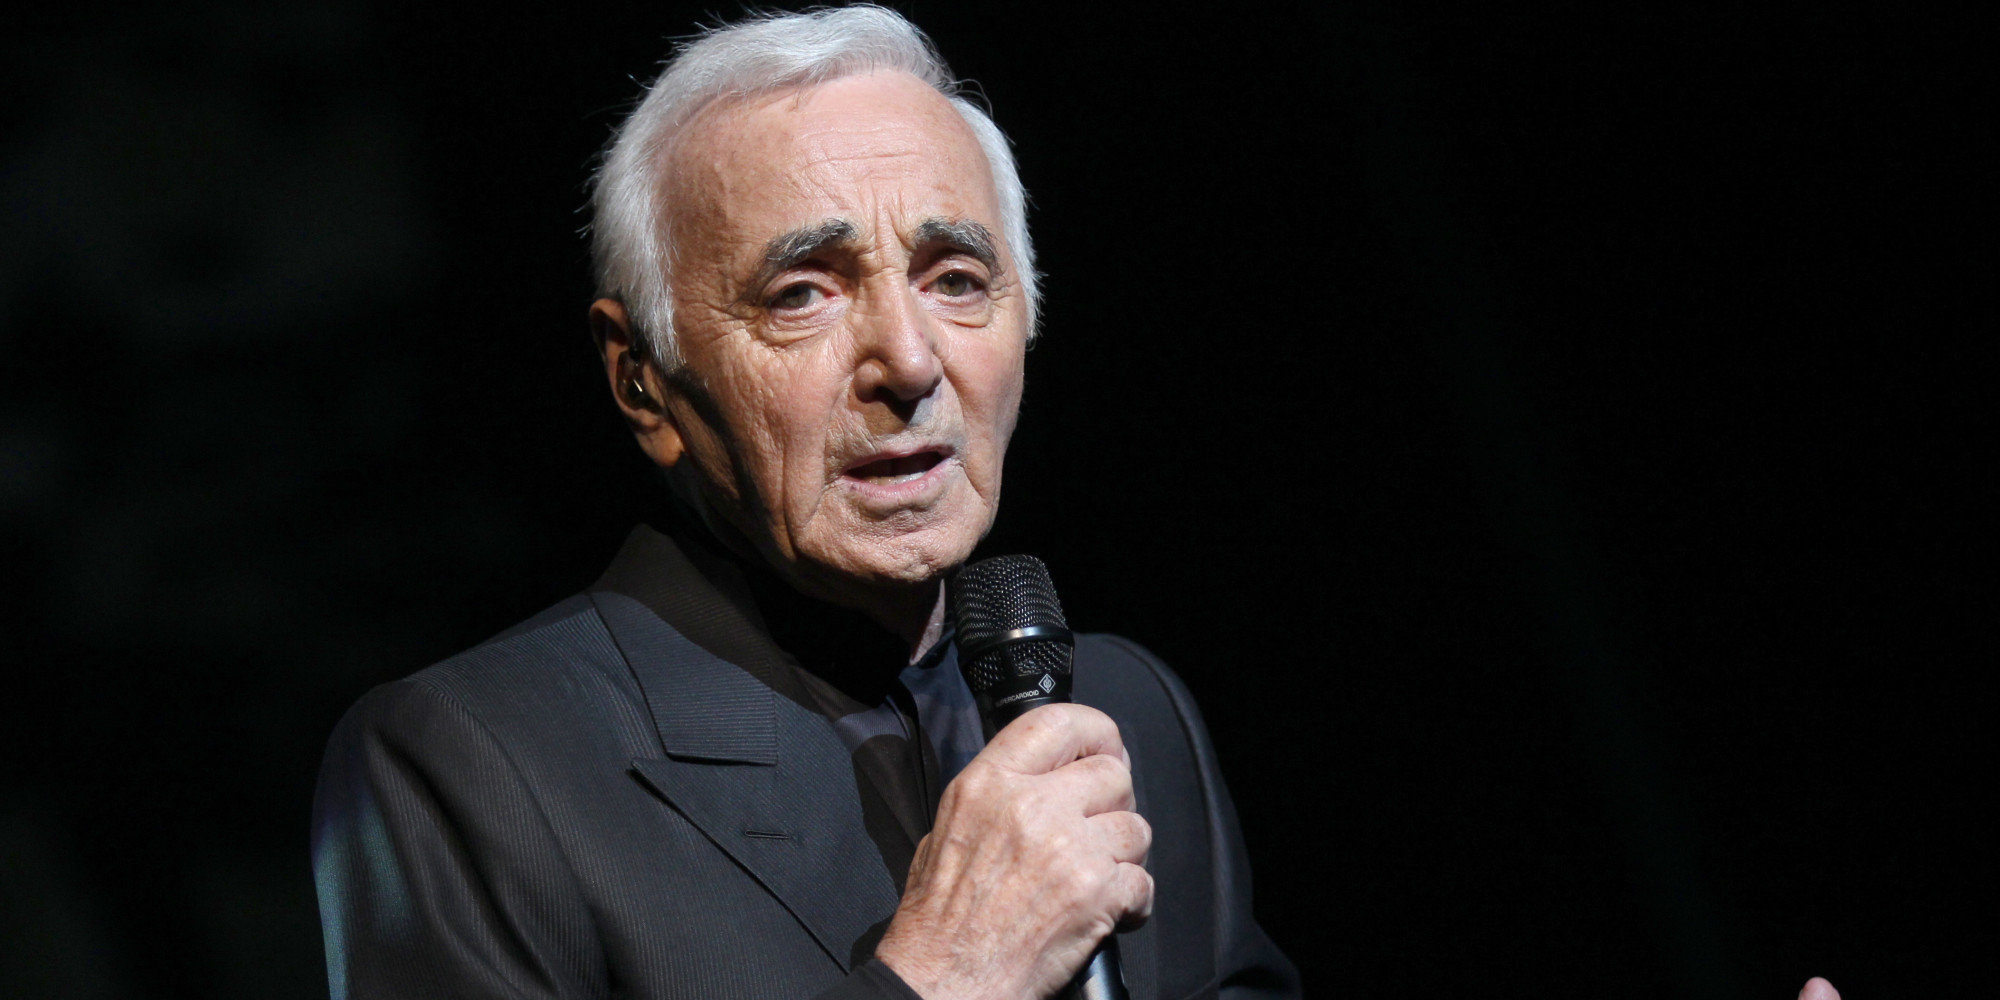 Charles Aznavour nasceu em Paris no dia 22 de maio de 1924. Se estivesse vivo estaria completando 99 anos. Charles Aznavour faleceu no dia 01 de Outubro de 2018 em Alpilles, França. 